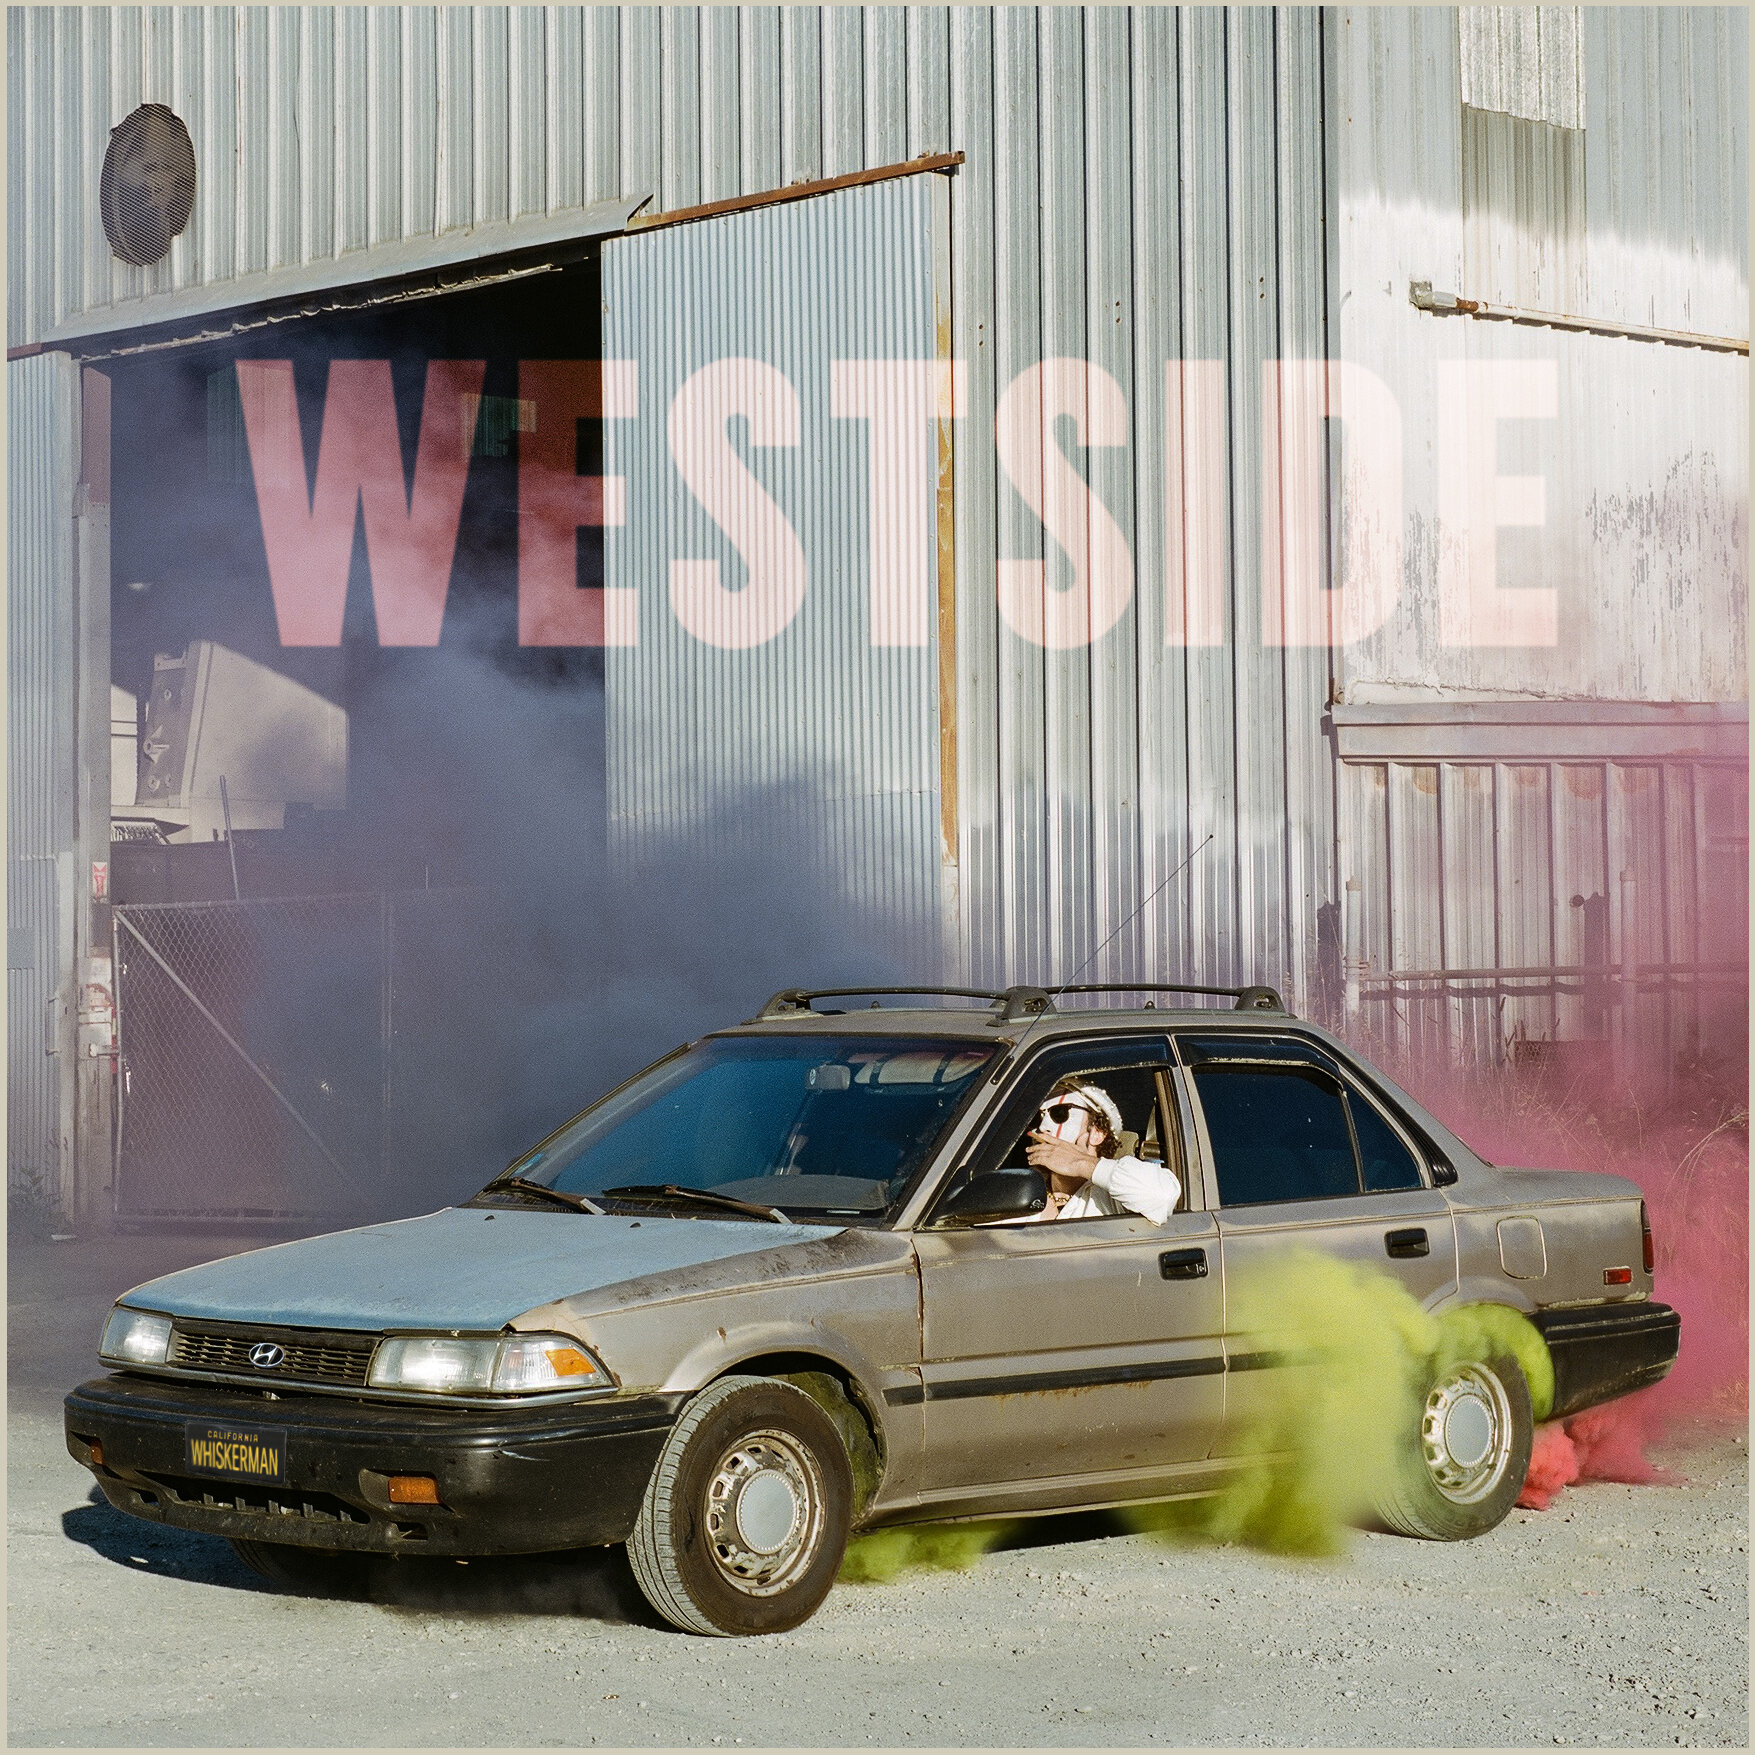 Westside Art Final digital.jpg